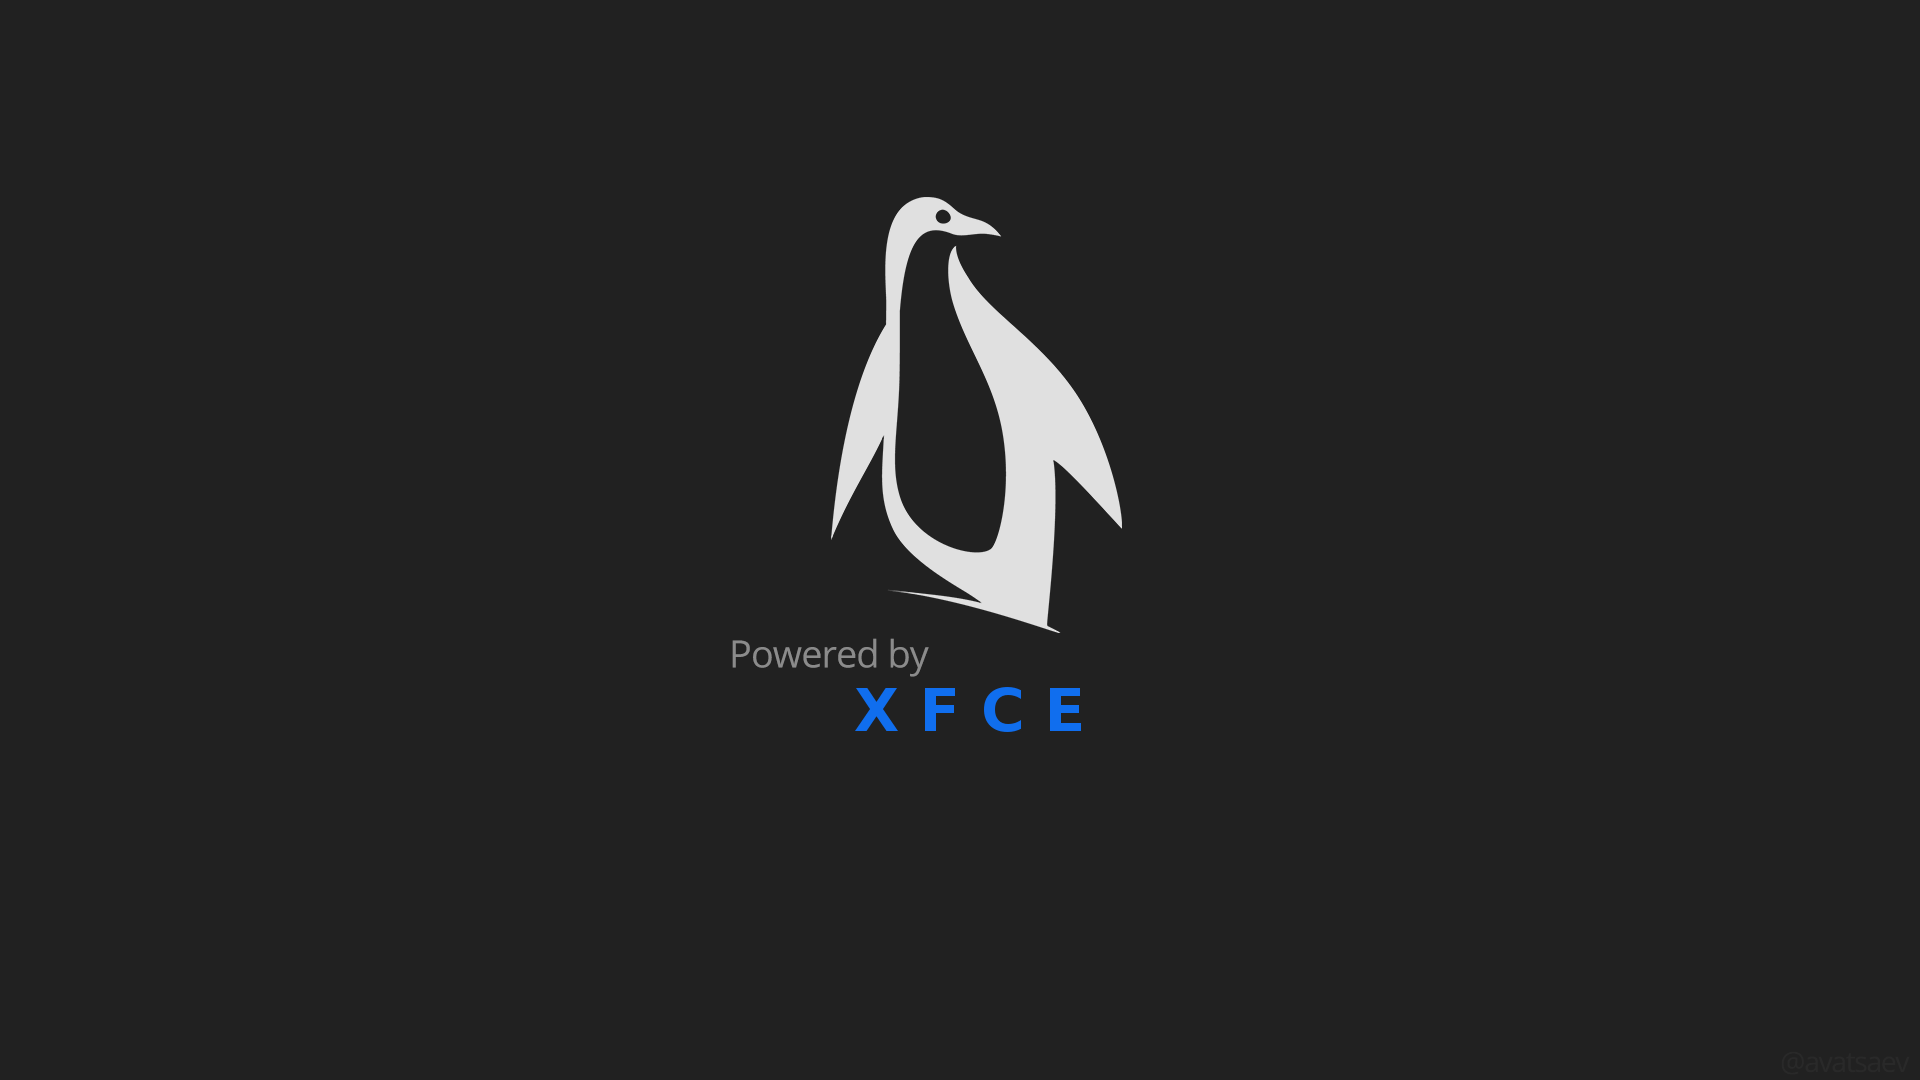 Top 10 hình nền Xfce - Khám phá các hình nền Xfce đẹp nhất và phổ biến nhất của năm nay. Tạo một không gian làm việc thật độc đáo và đặc biệt với những hình nền xuất sắc này. Duyệt qua danh sách và tải xuống ngay!